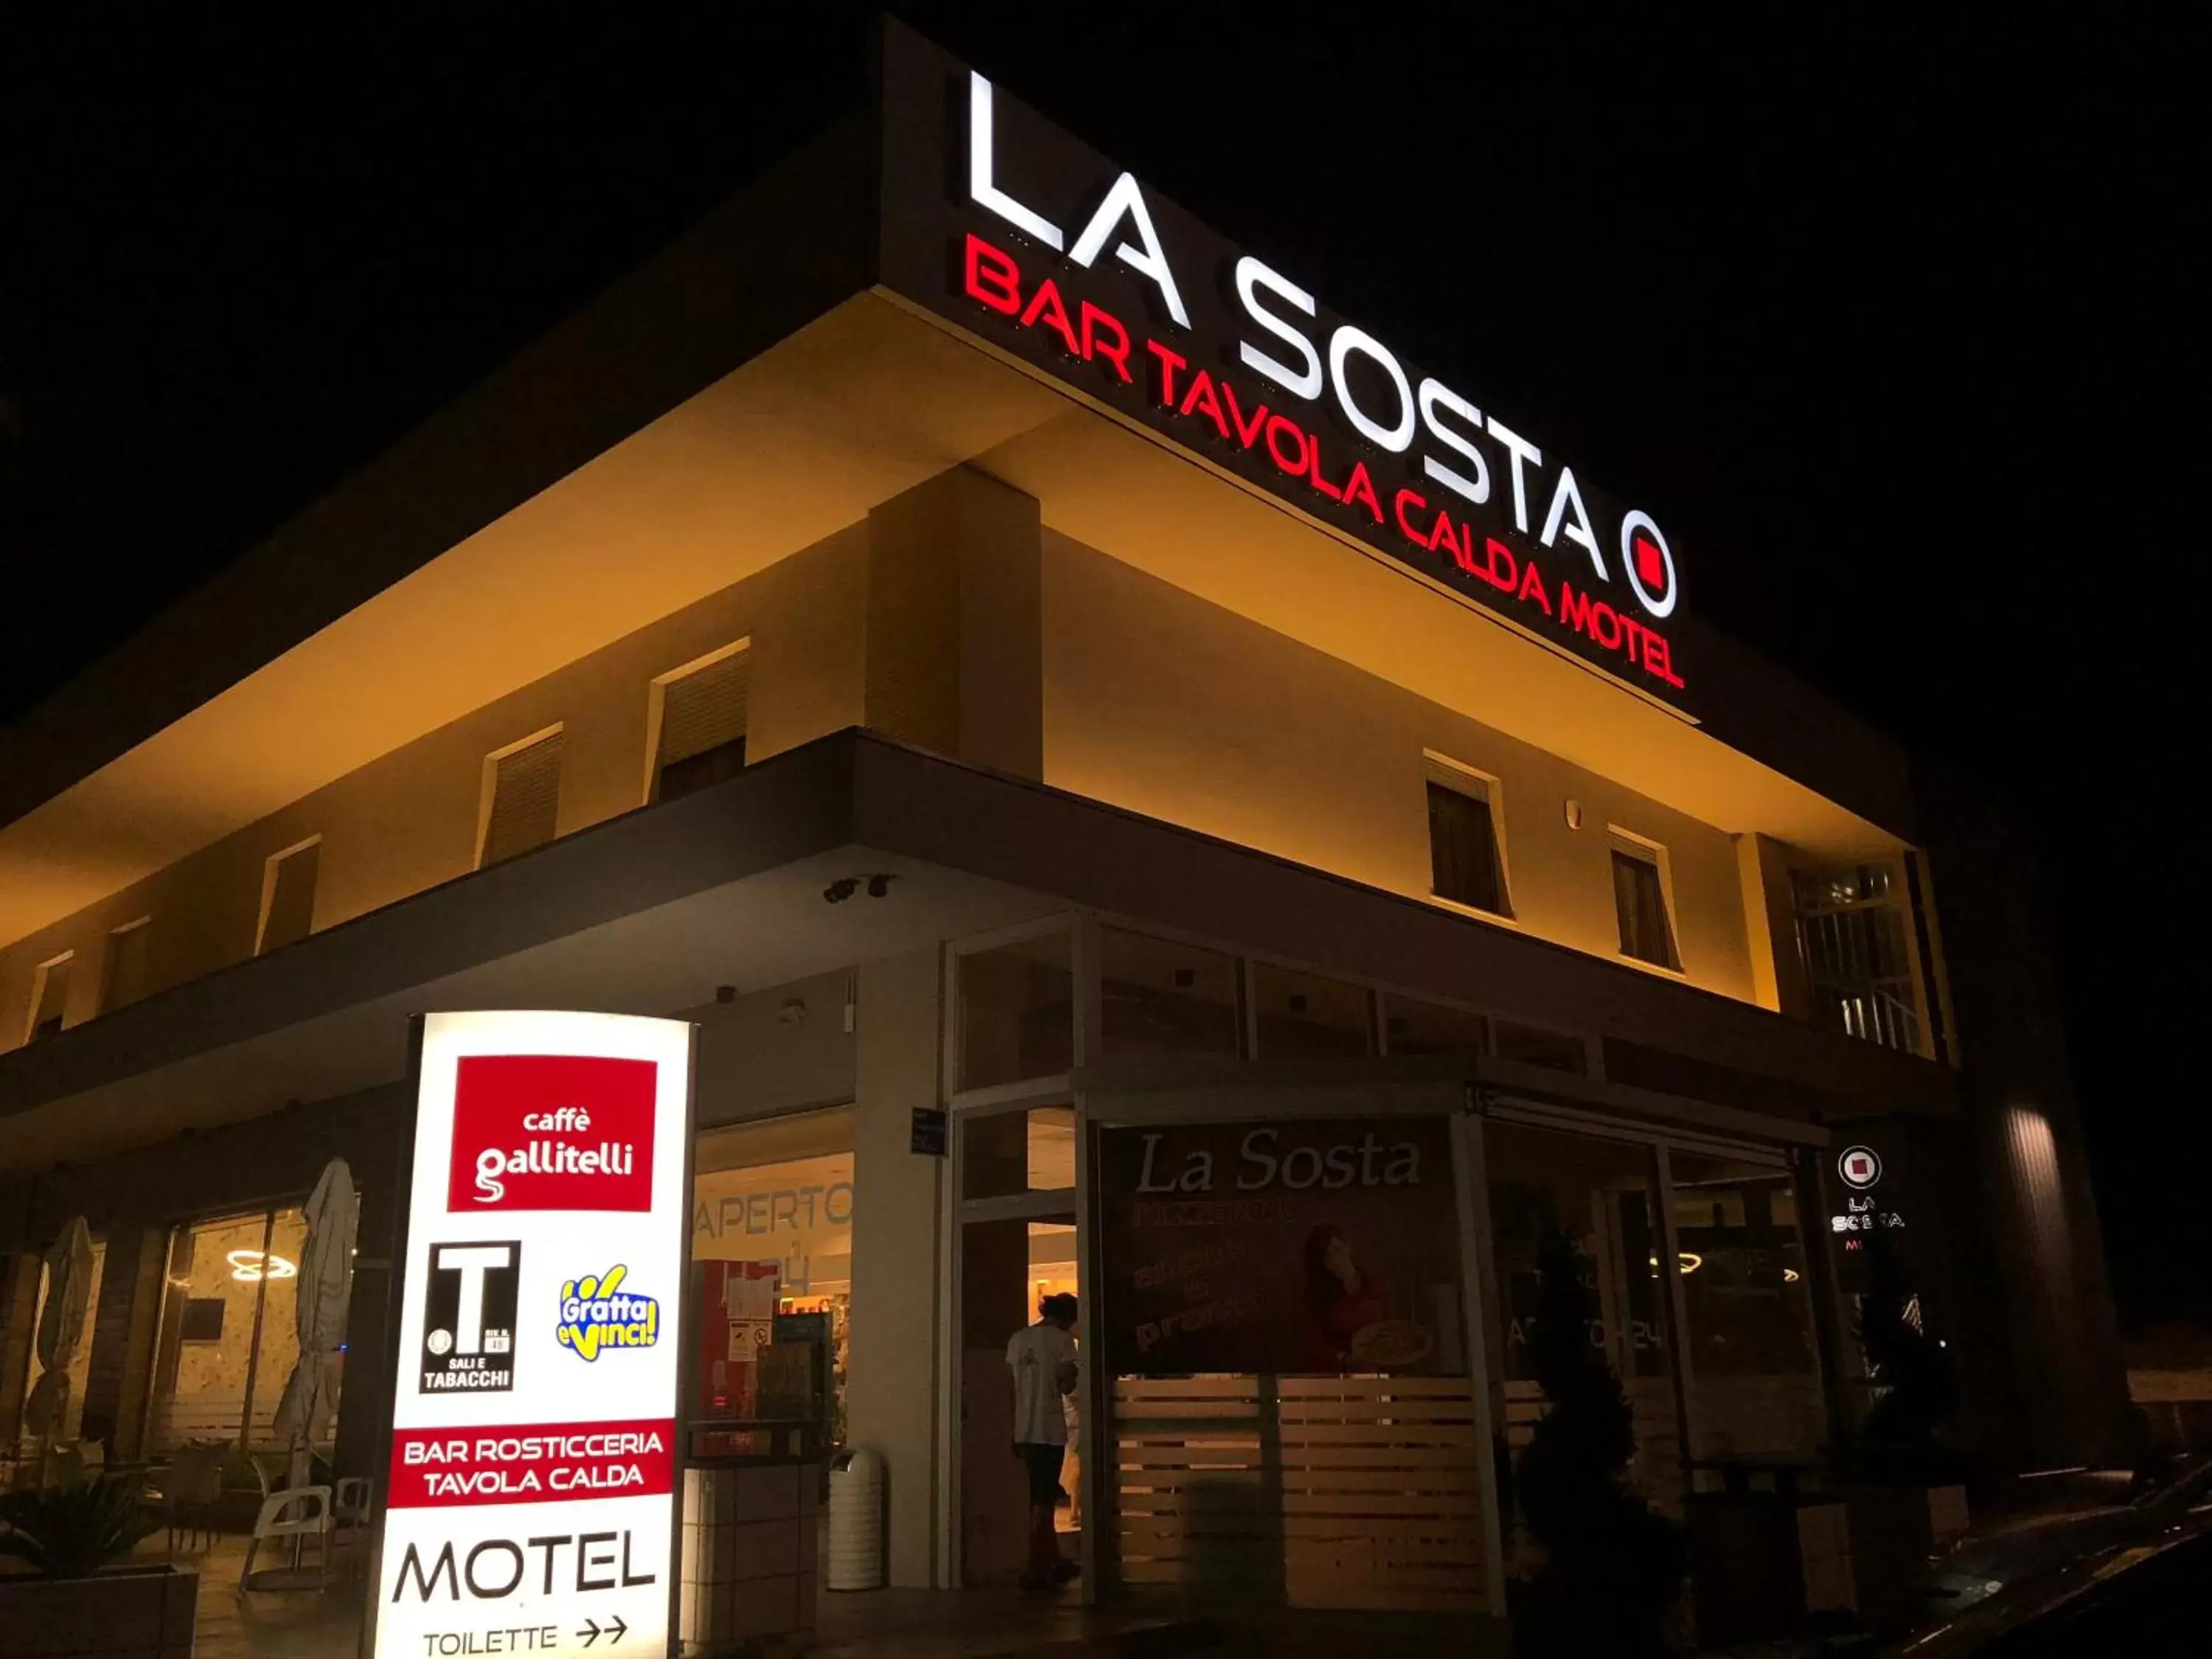 Property logo or sign in La Sosta Motel Tavola Calda